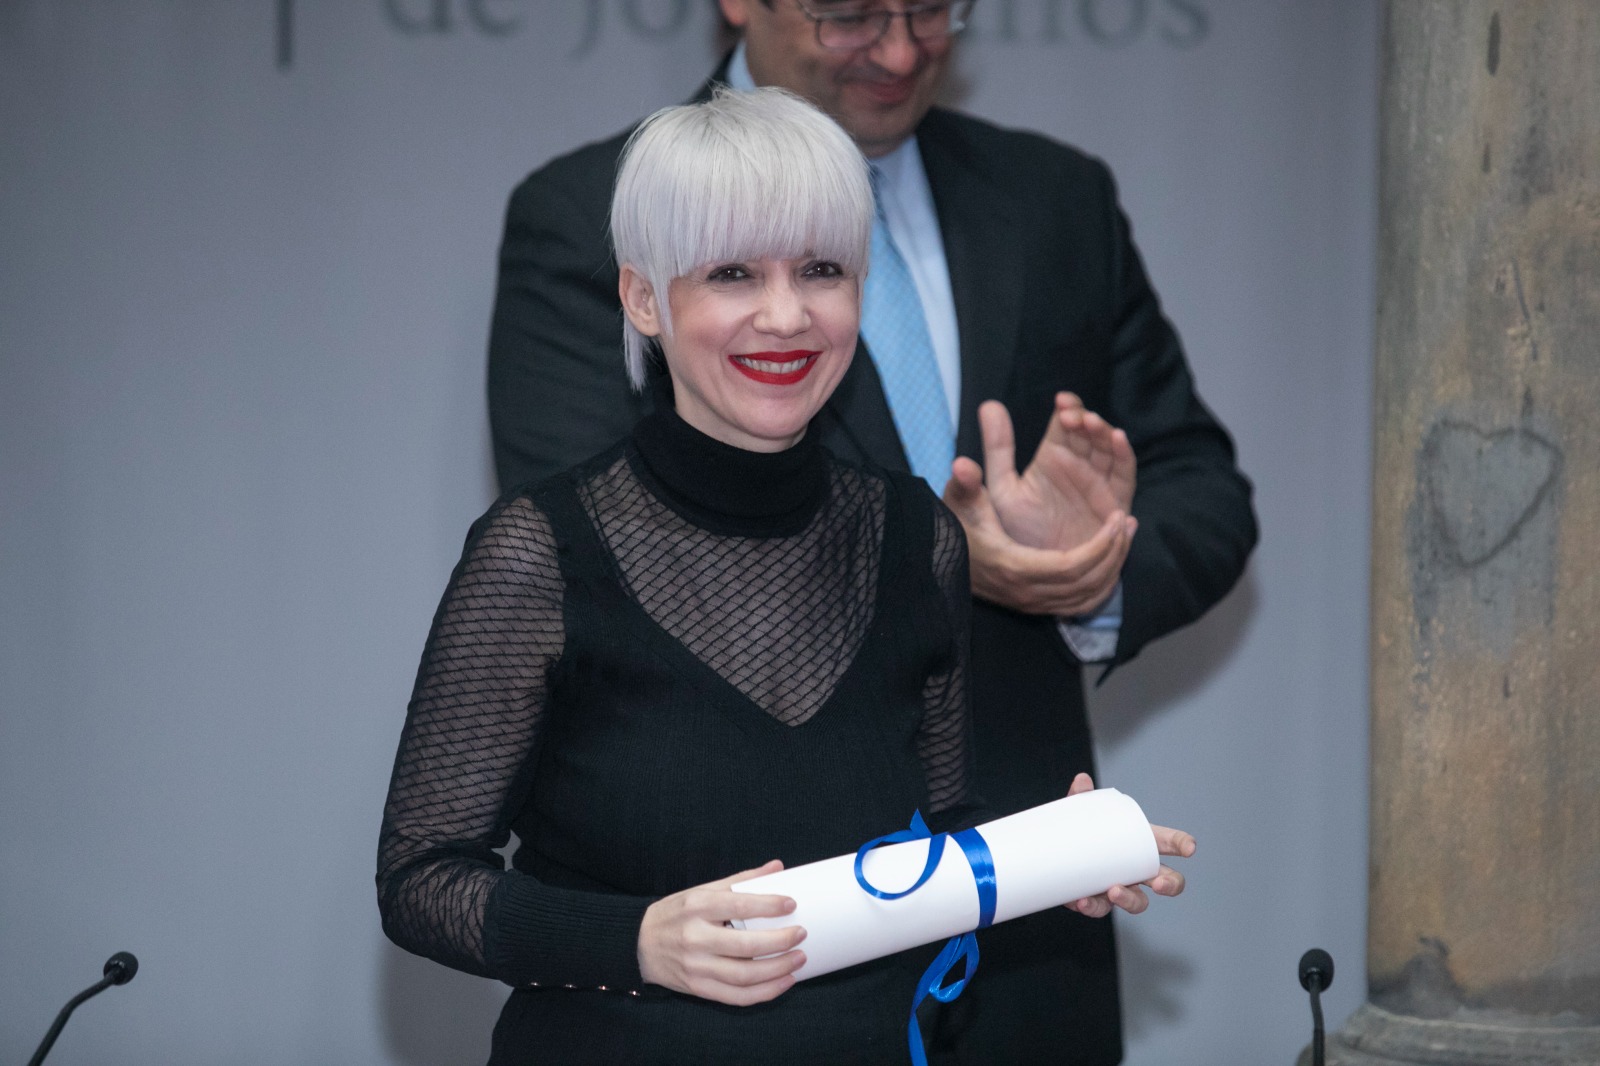 El pasado miércoles 5 de octubre Remedios Zafra, investigadora del Instituto de Filosofía del CSIC recibió el Premio Internacional de Ensayo Jovellanos en Gijón por su obra "El bucle invisible"